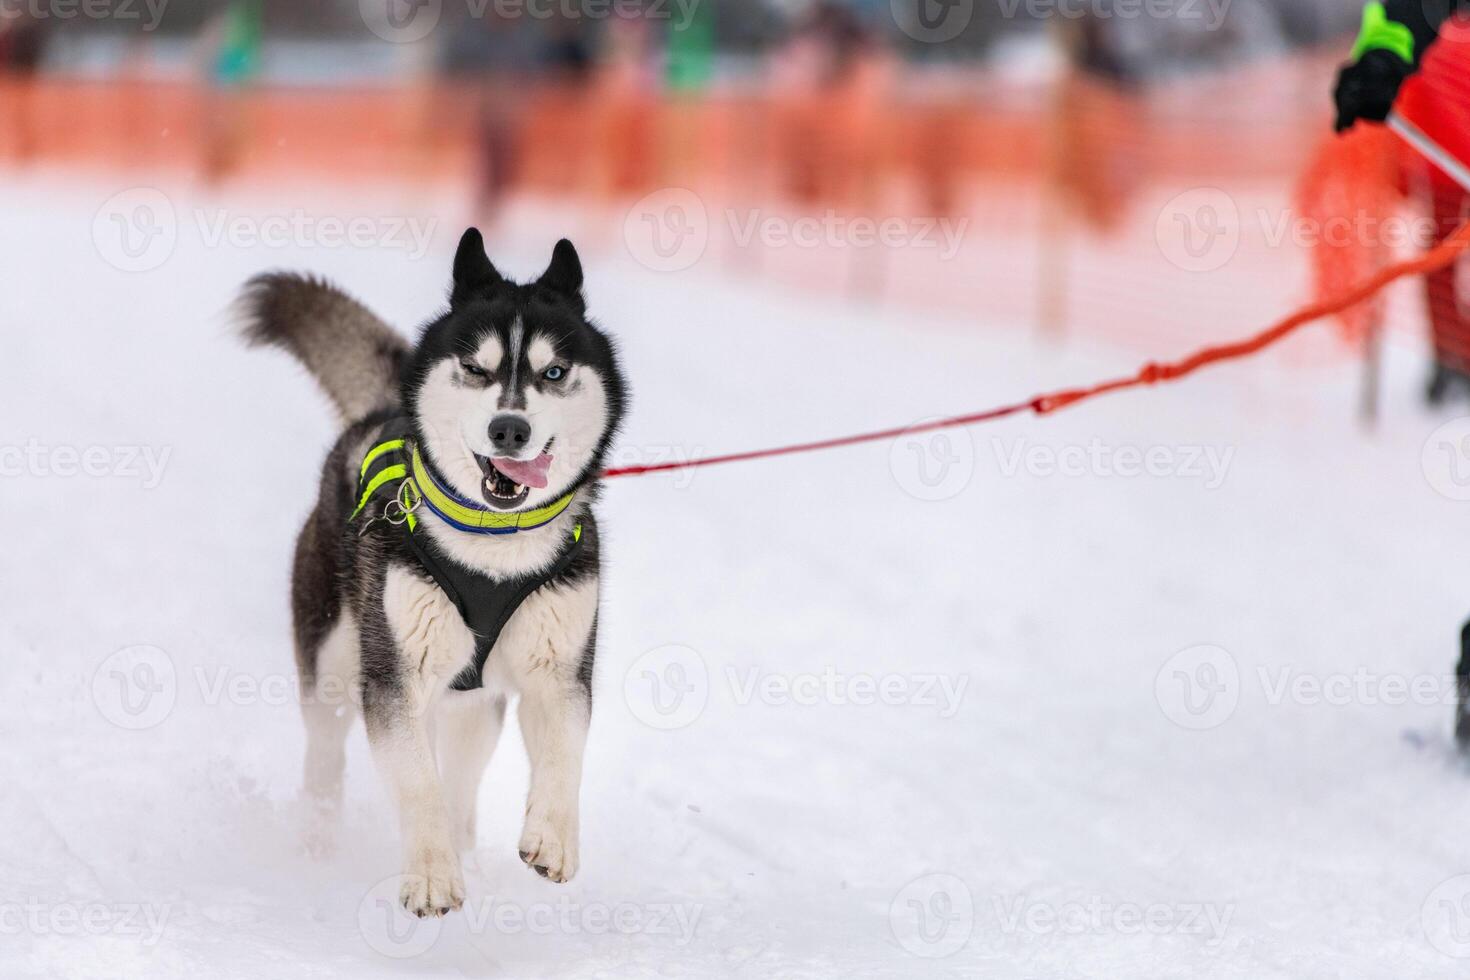 trineo tirado por perros. tirador de perros de trineo tirado por perros husky. competición de campeonato deportivo. foto